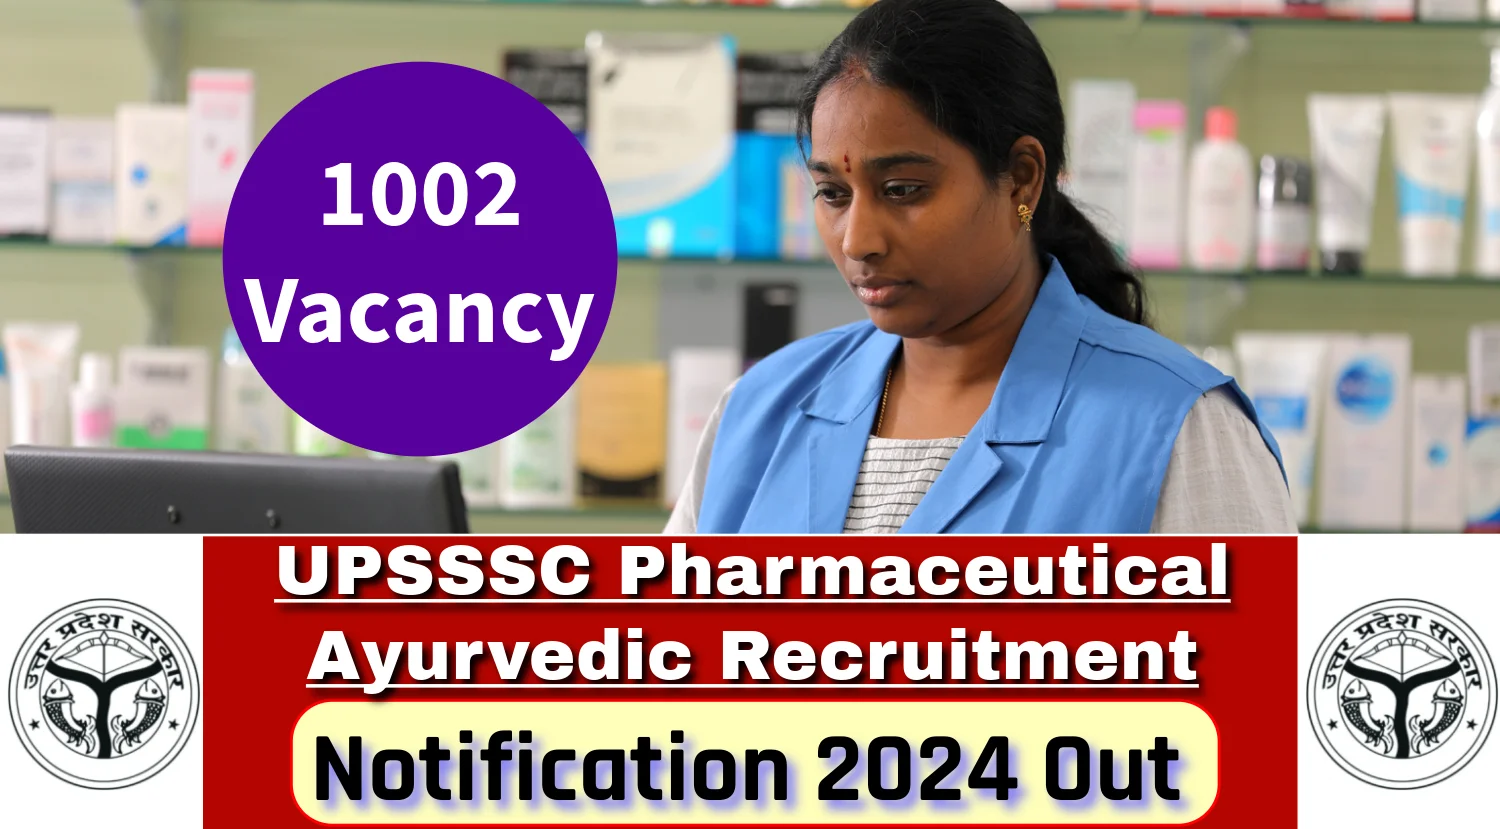 UPSSSC Pharmaceutical Ayurvedic Notification 2024 Out for 1002 Vacancies, Check Bheshjik Exam Details Now – Karmasandhan